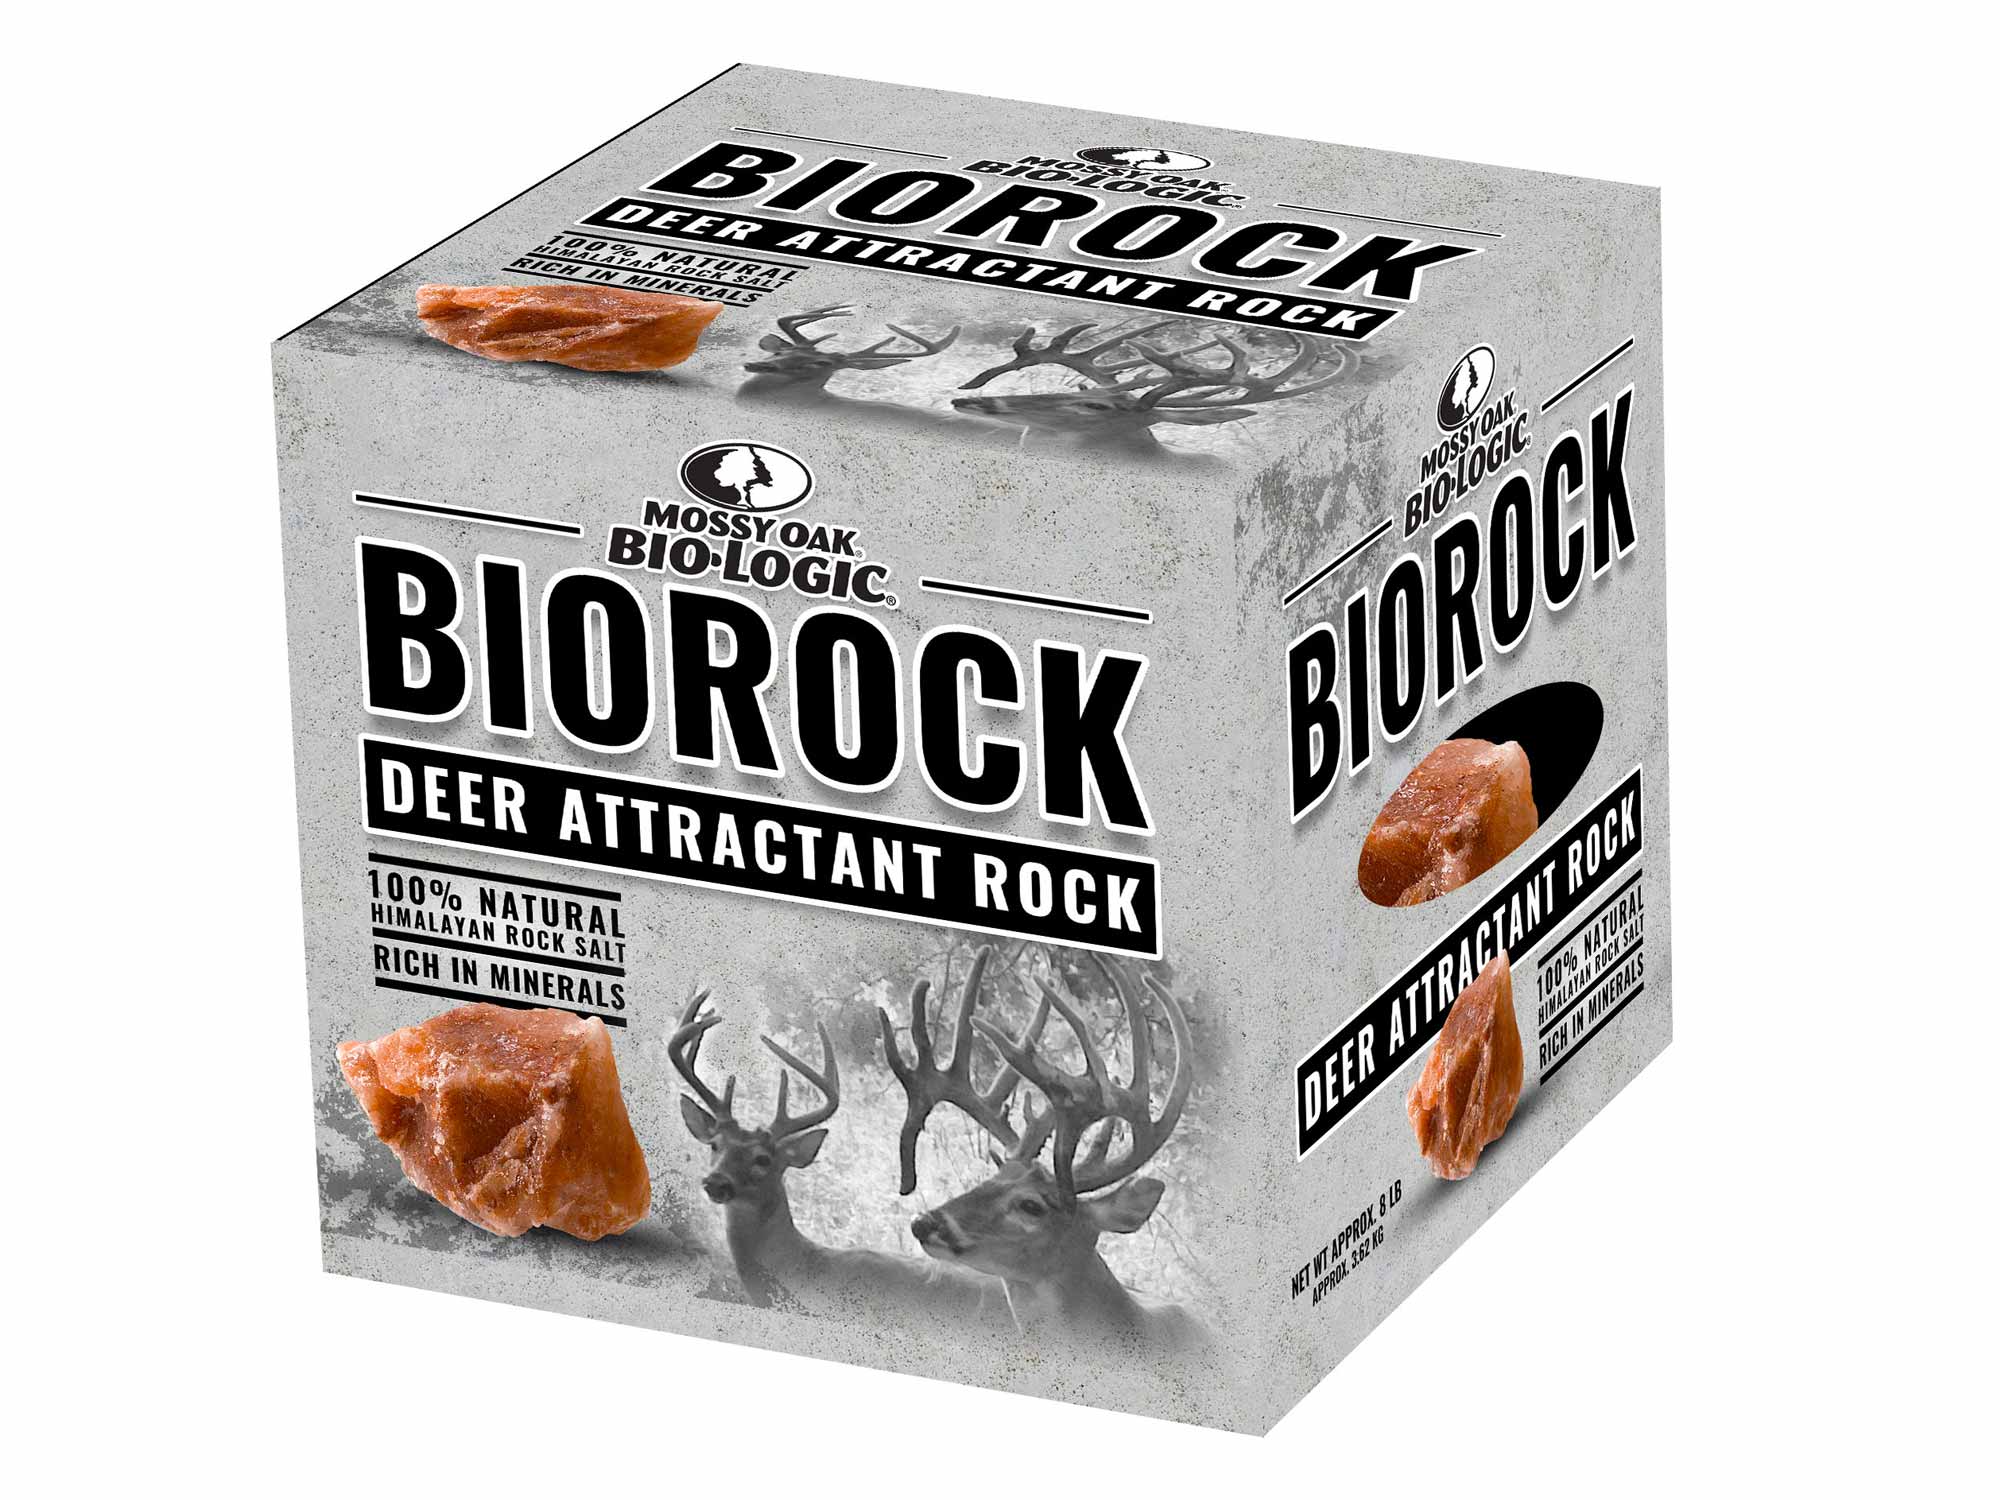 Biorock deer attractant block